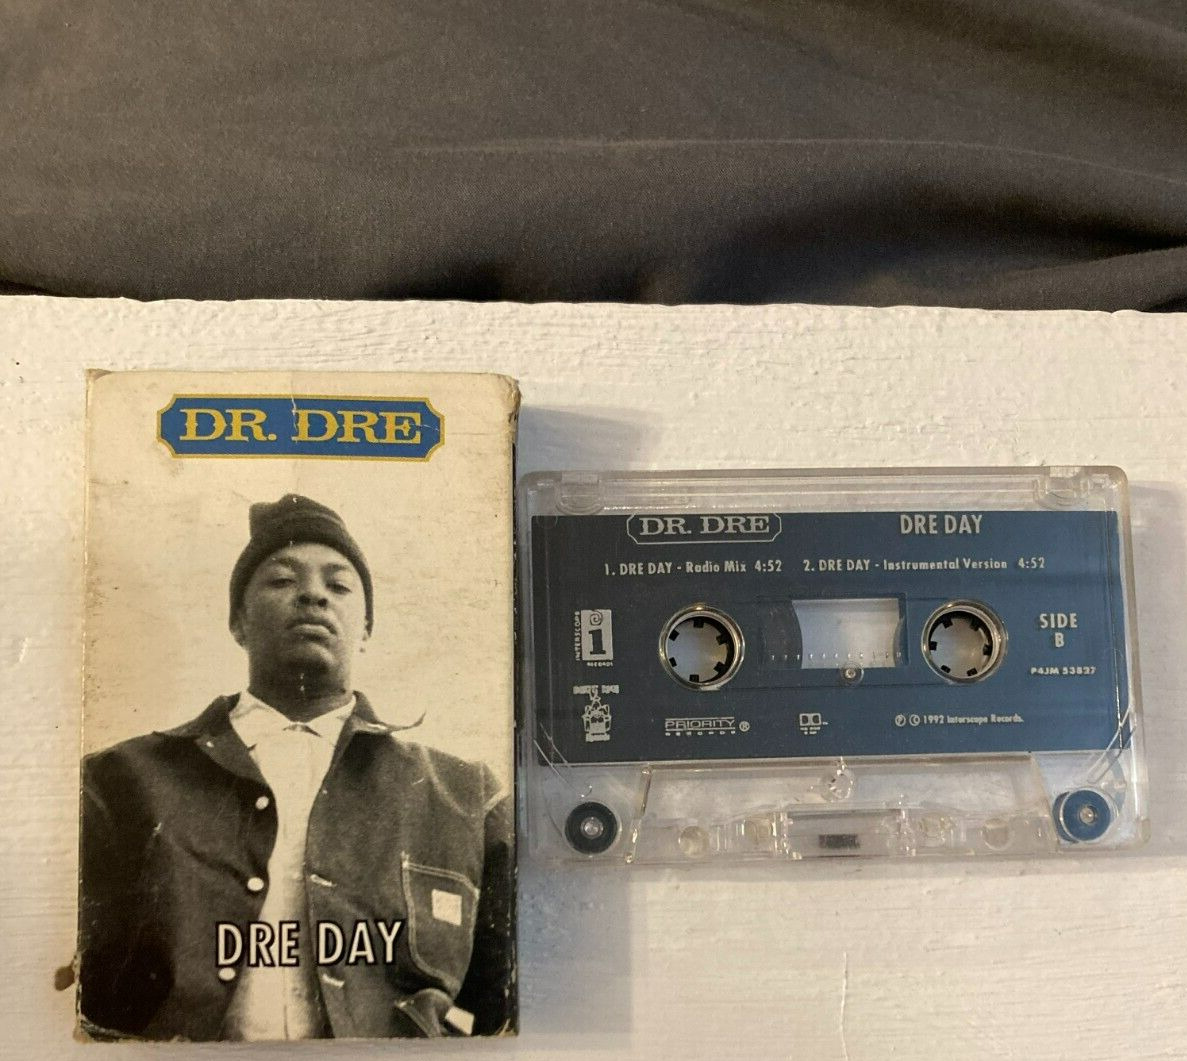 DR. DRE /DRE DAY SINGLE 1992 VINTAGE CASSETTE TAPE  Rap Hip Hop